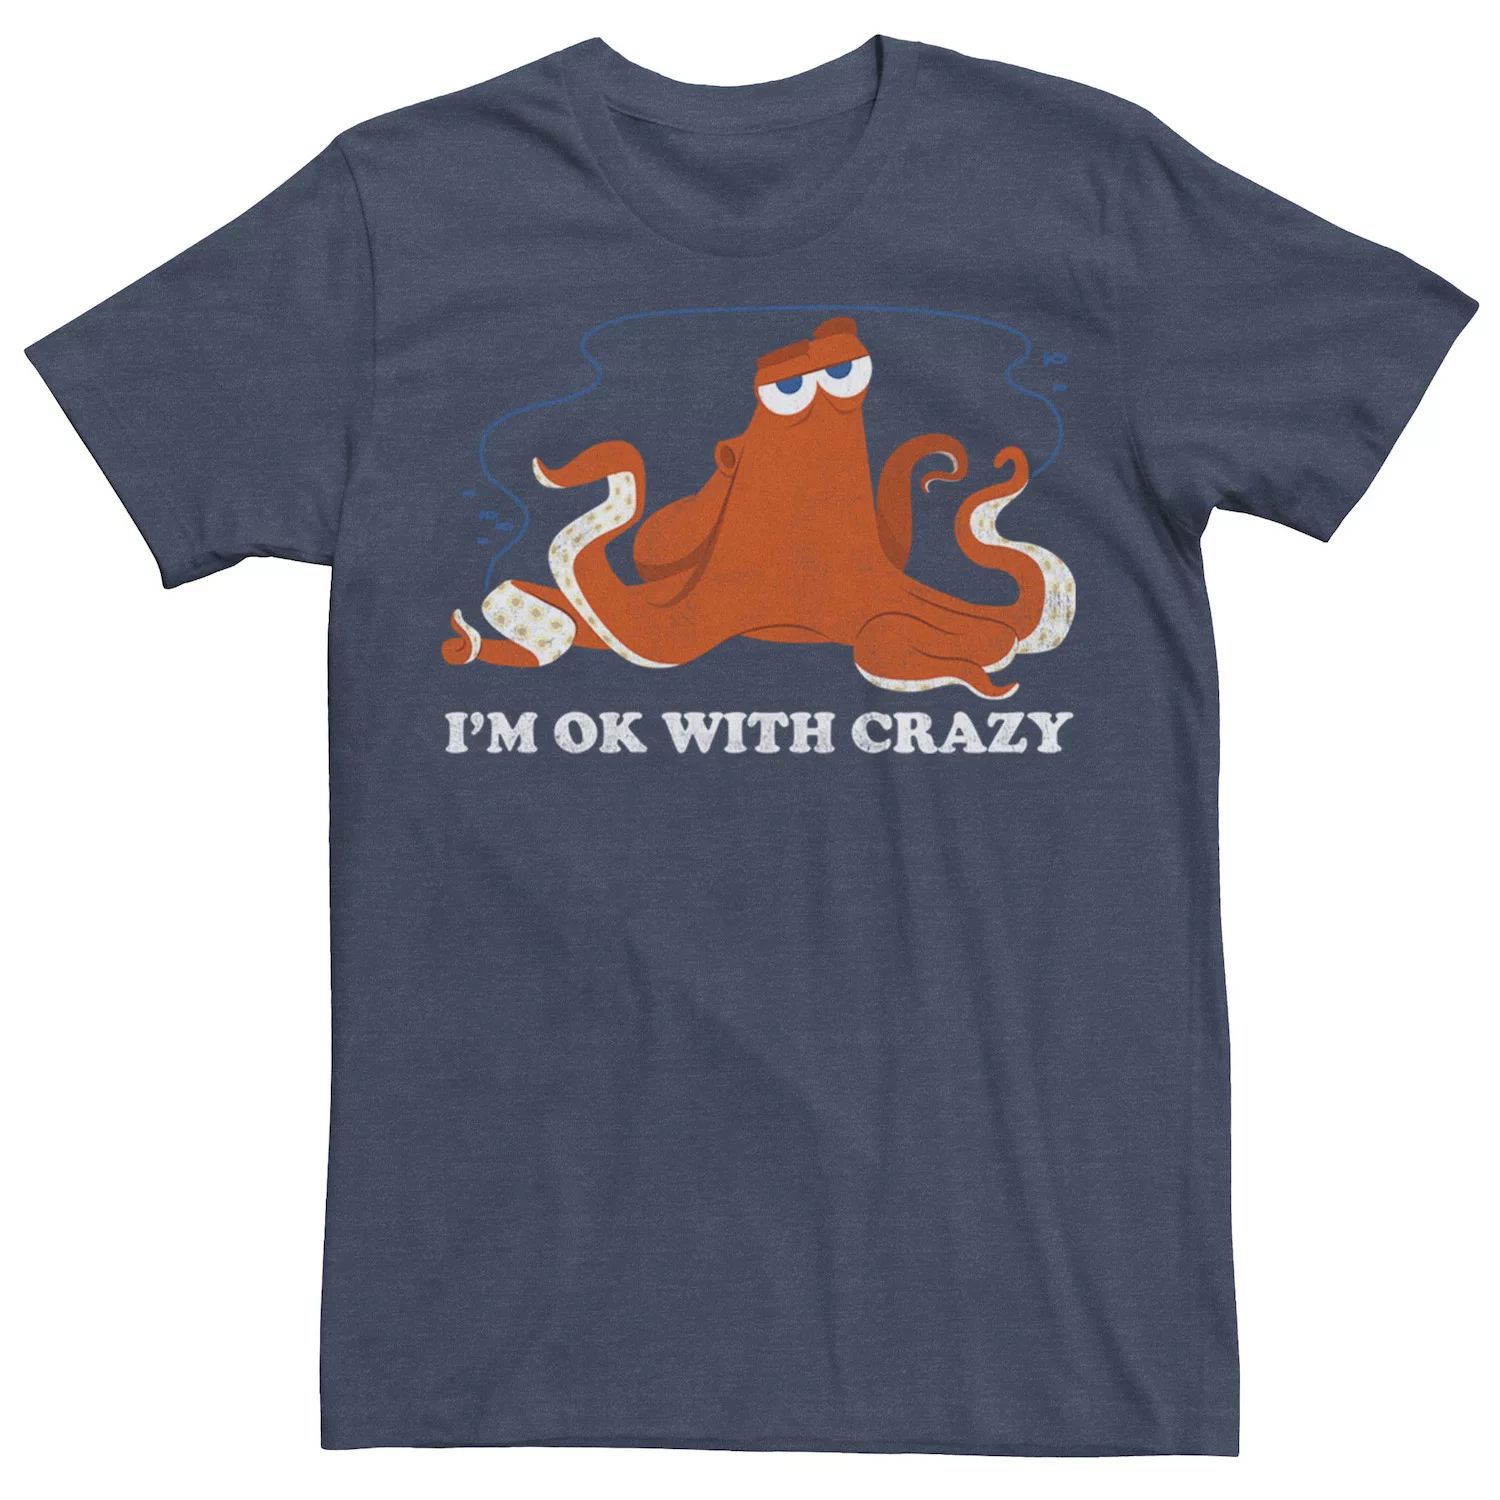 Мужская футболка Finding Dory Hank Ok Crazy Disney / Pixar